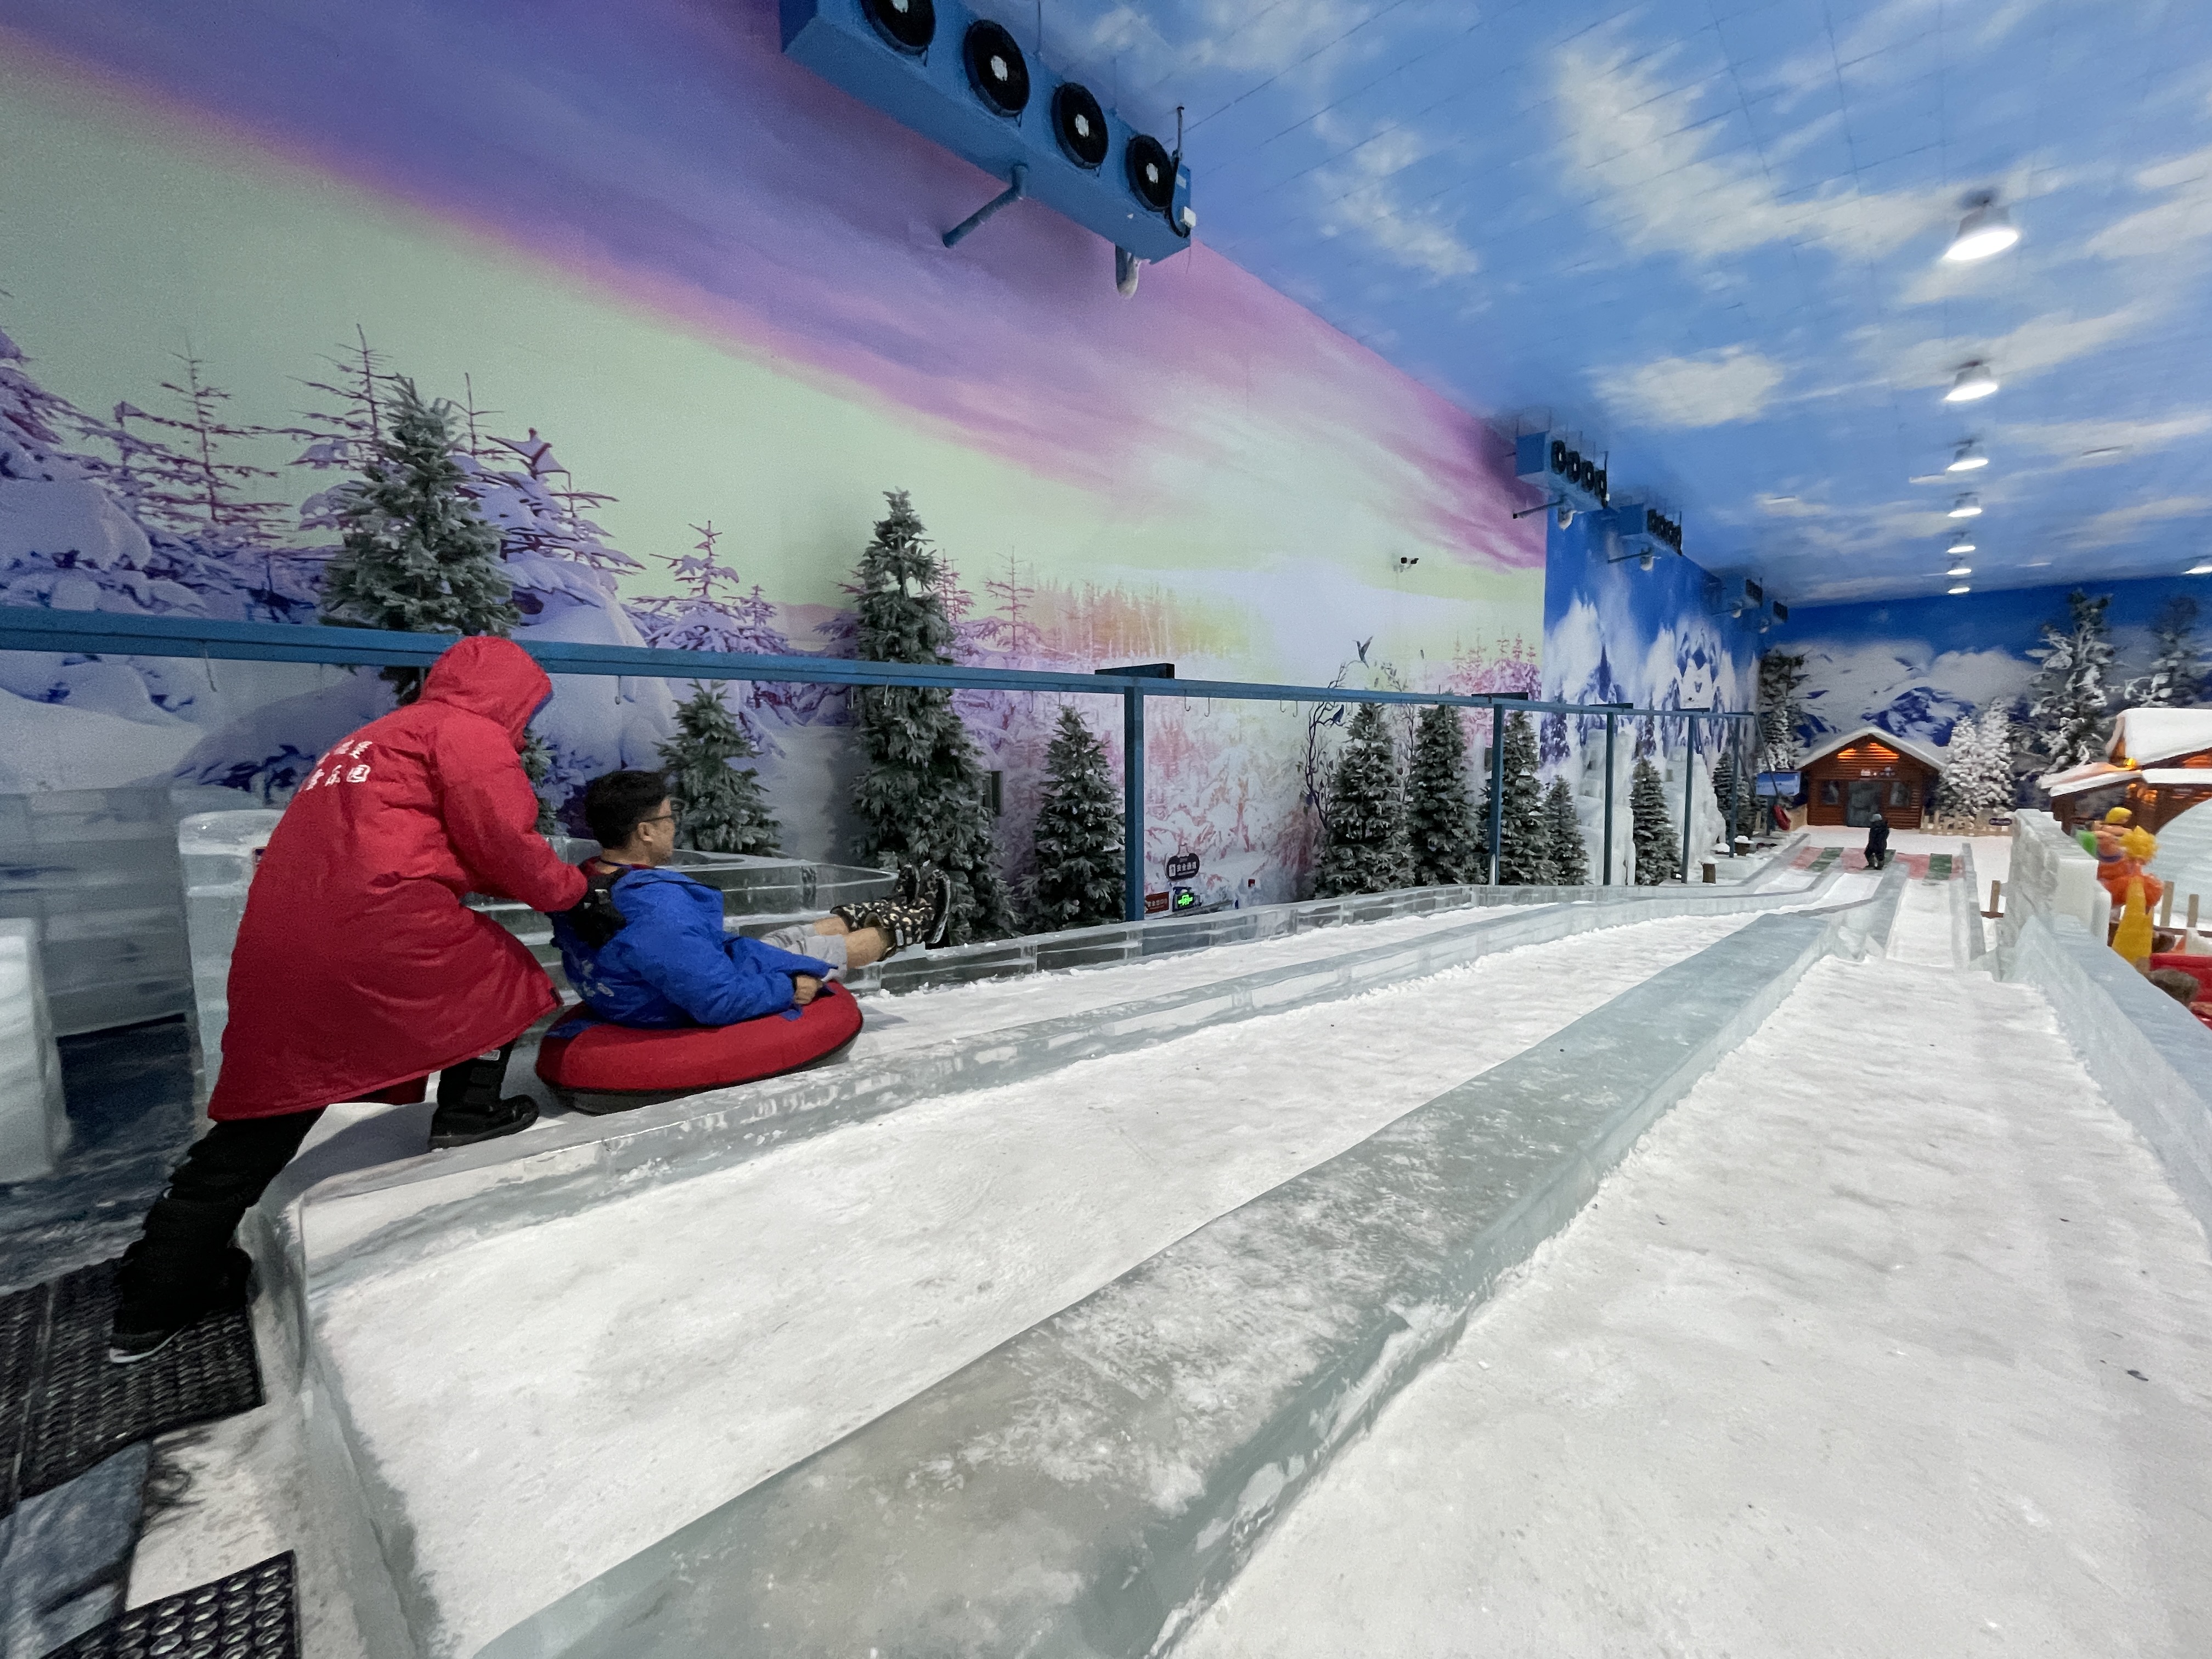 在隐贤山庄的圣德堡飘雪乐园同样可以满足你对冰雪世界的渴望